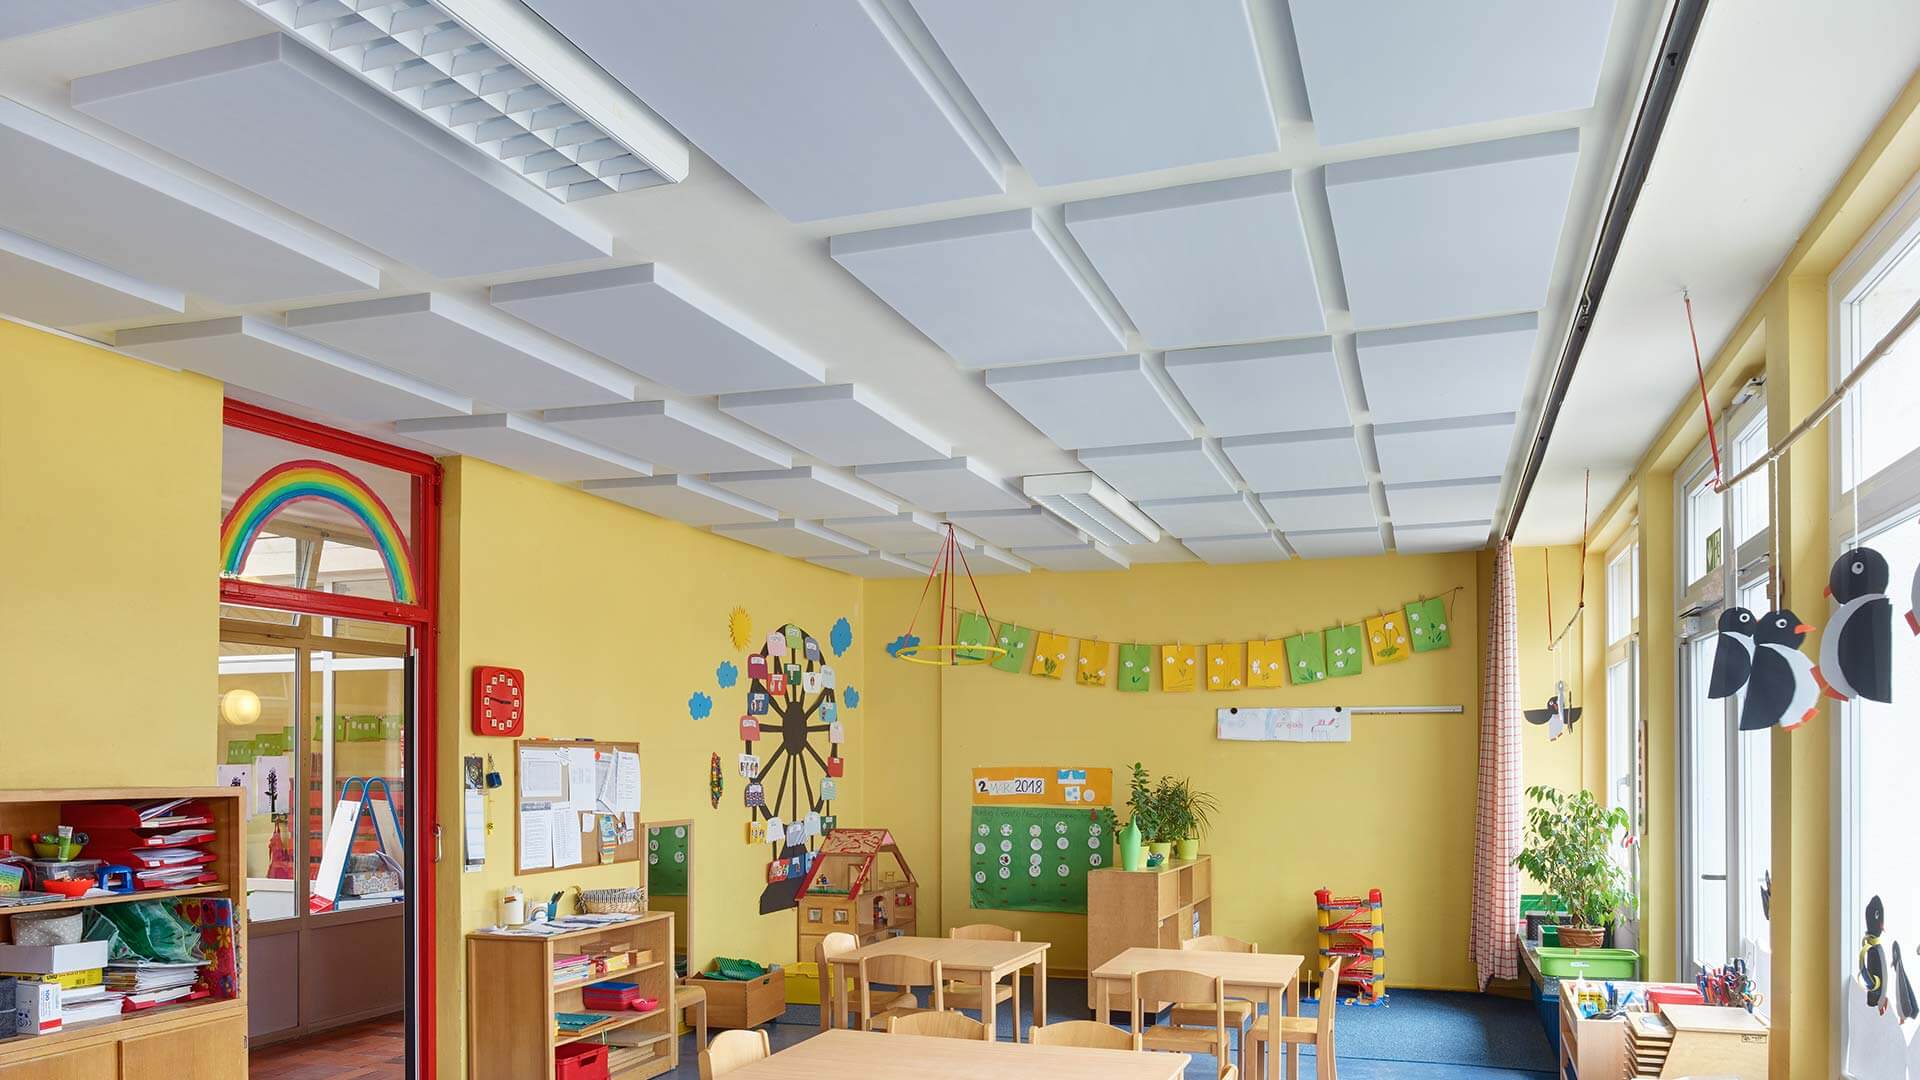 Bilder der aixFOAM Schallabsorber in Kindergarten und Schule